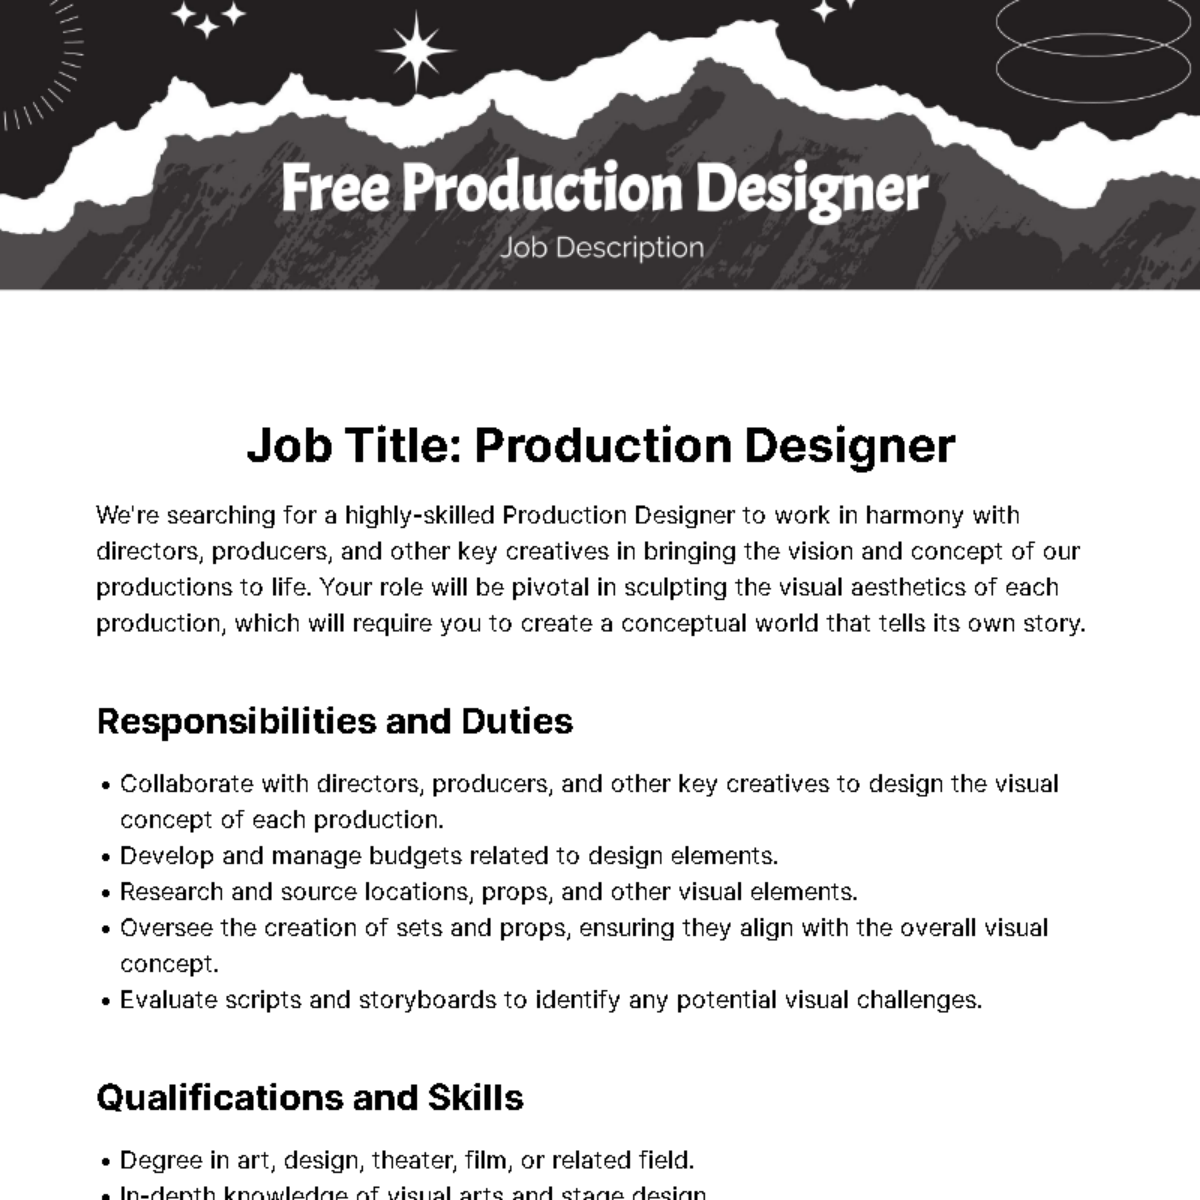 Free Production Designer Job Description Template